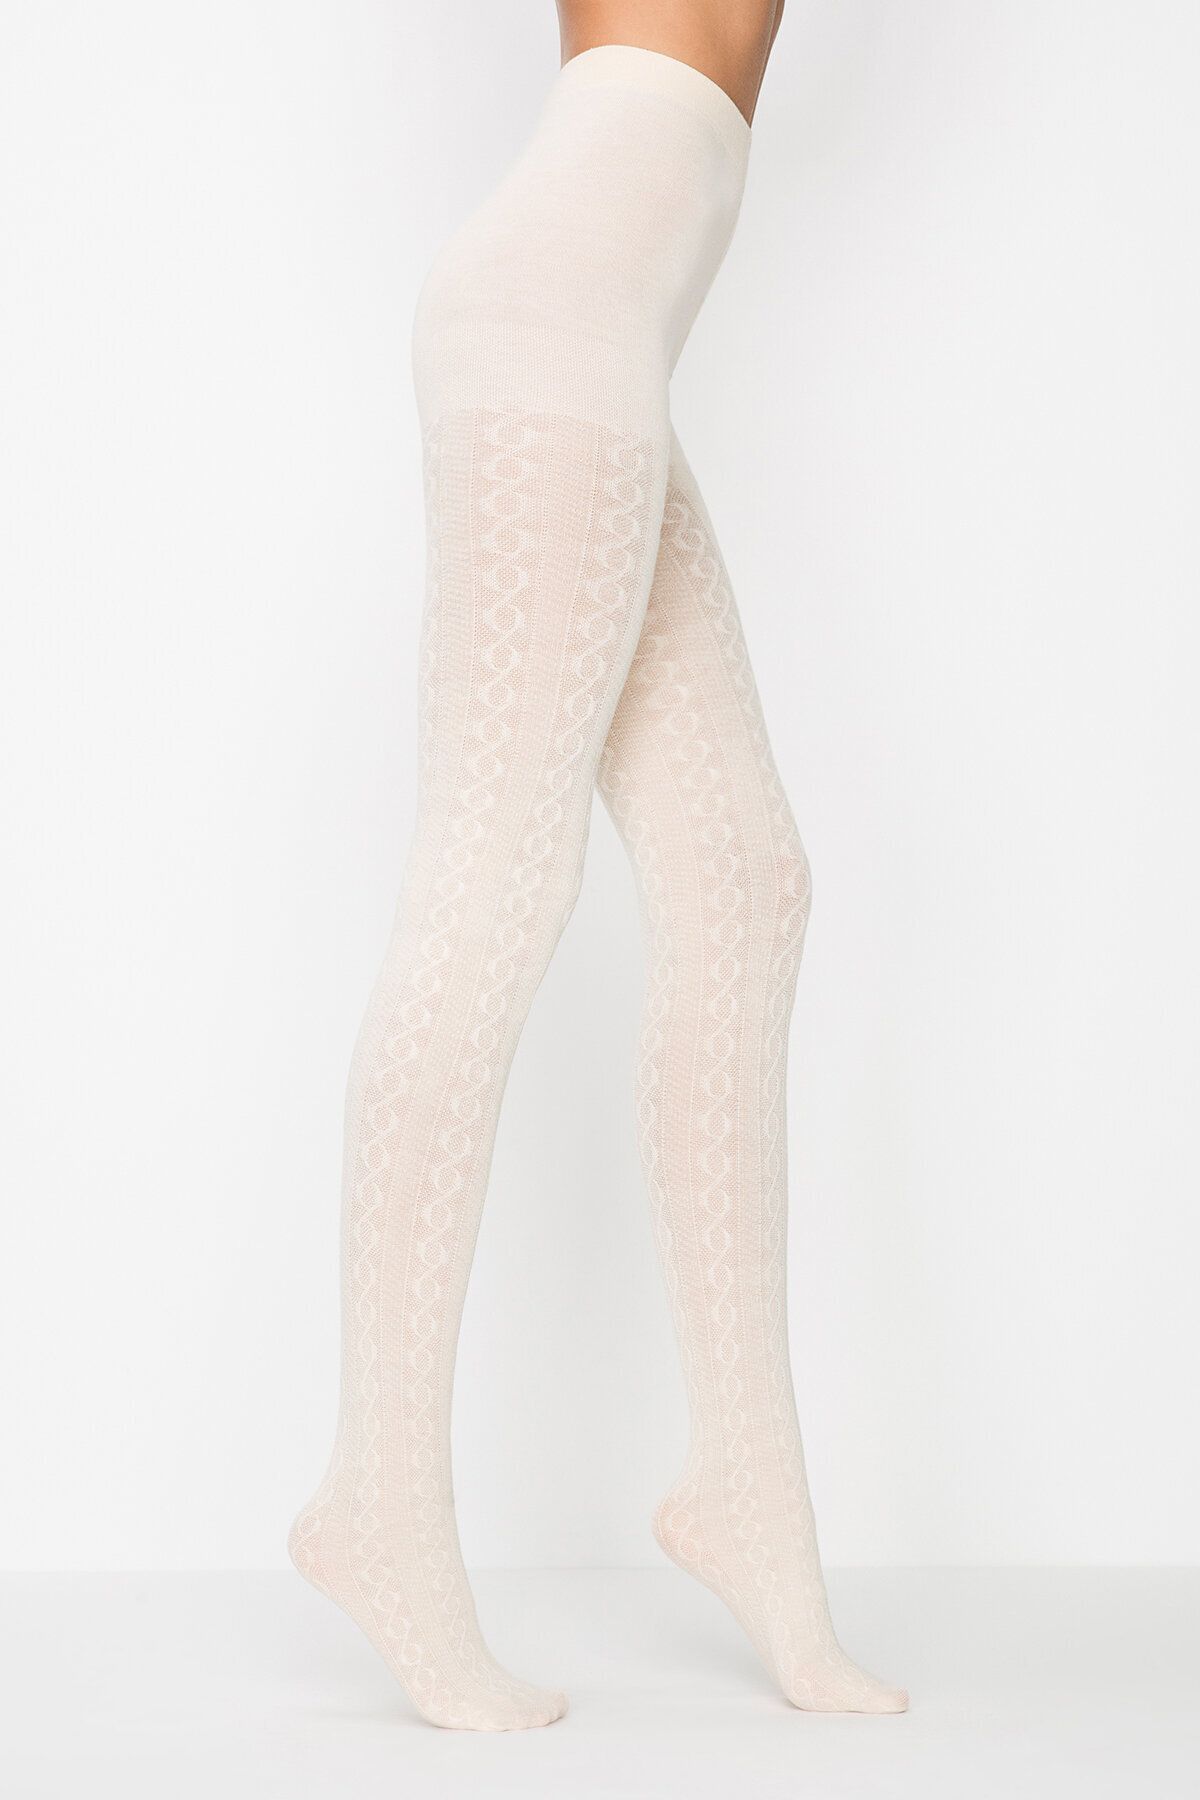 FALKE Kadın külotlu çorap, şeffaf, Beyaz (White 2209), 35-37 :  : Moda